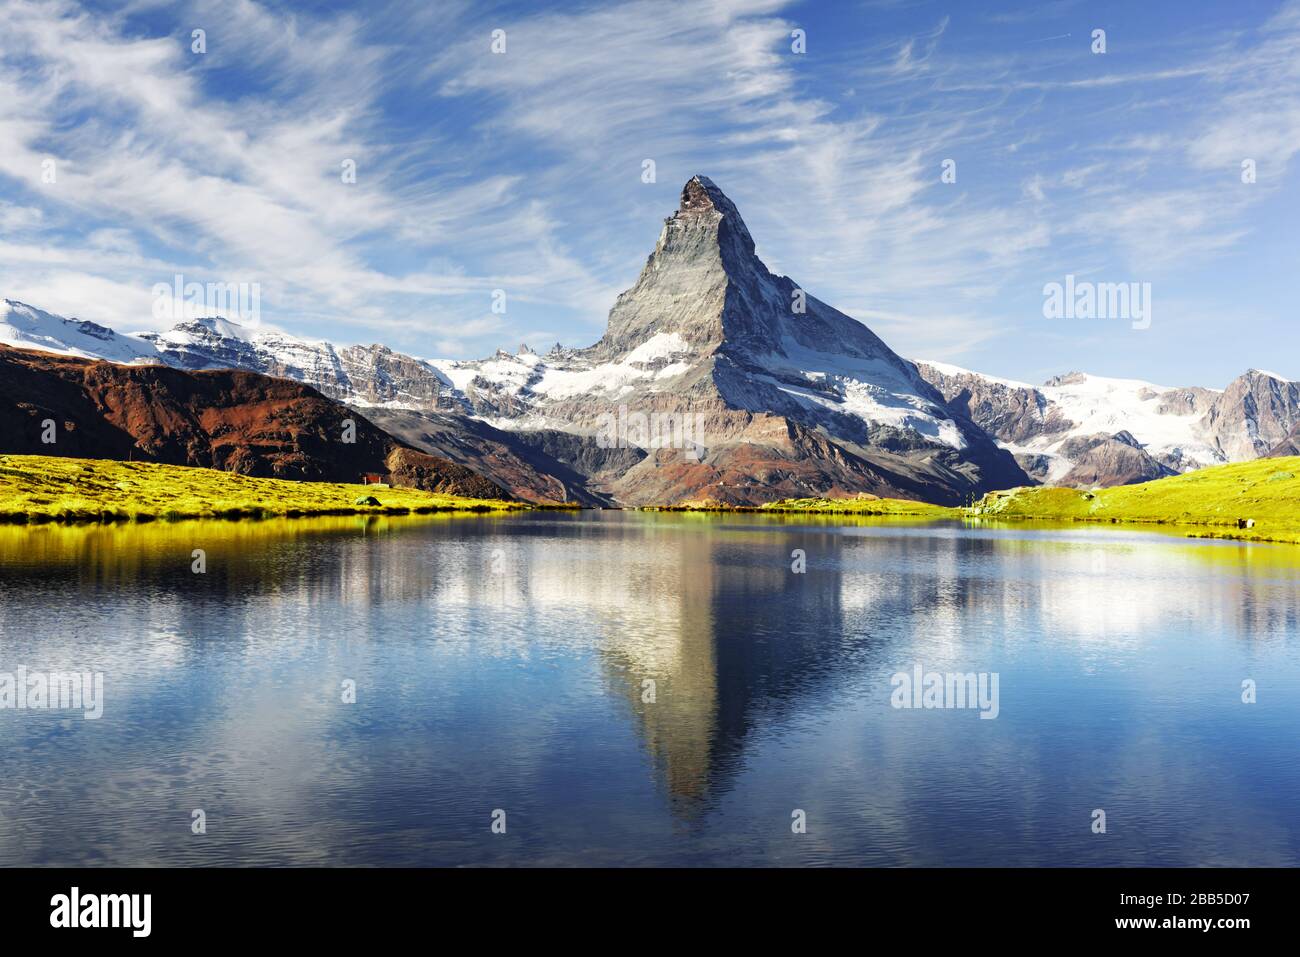 Malerische Aussicht auf das Matterhorn Matterhorn Peak und Stellisee See in der Schweizer Alpen. Tag Foto mit blauen Himmel. Zermatt Resort Lage, Schweiz. Landschaftsfotografie Stockfoto